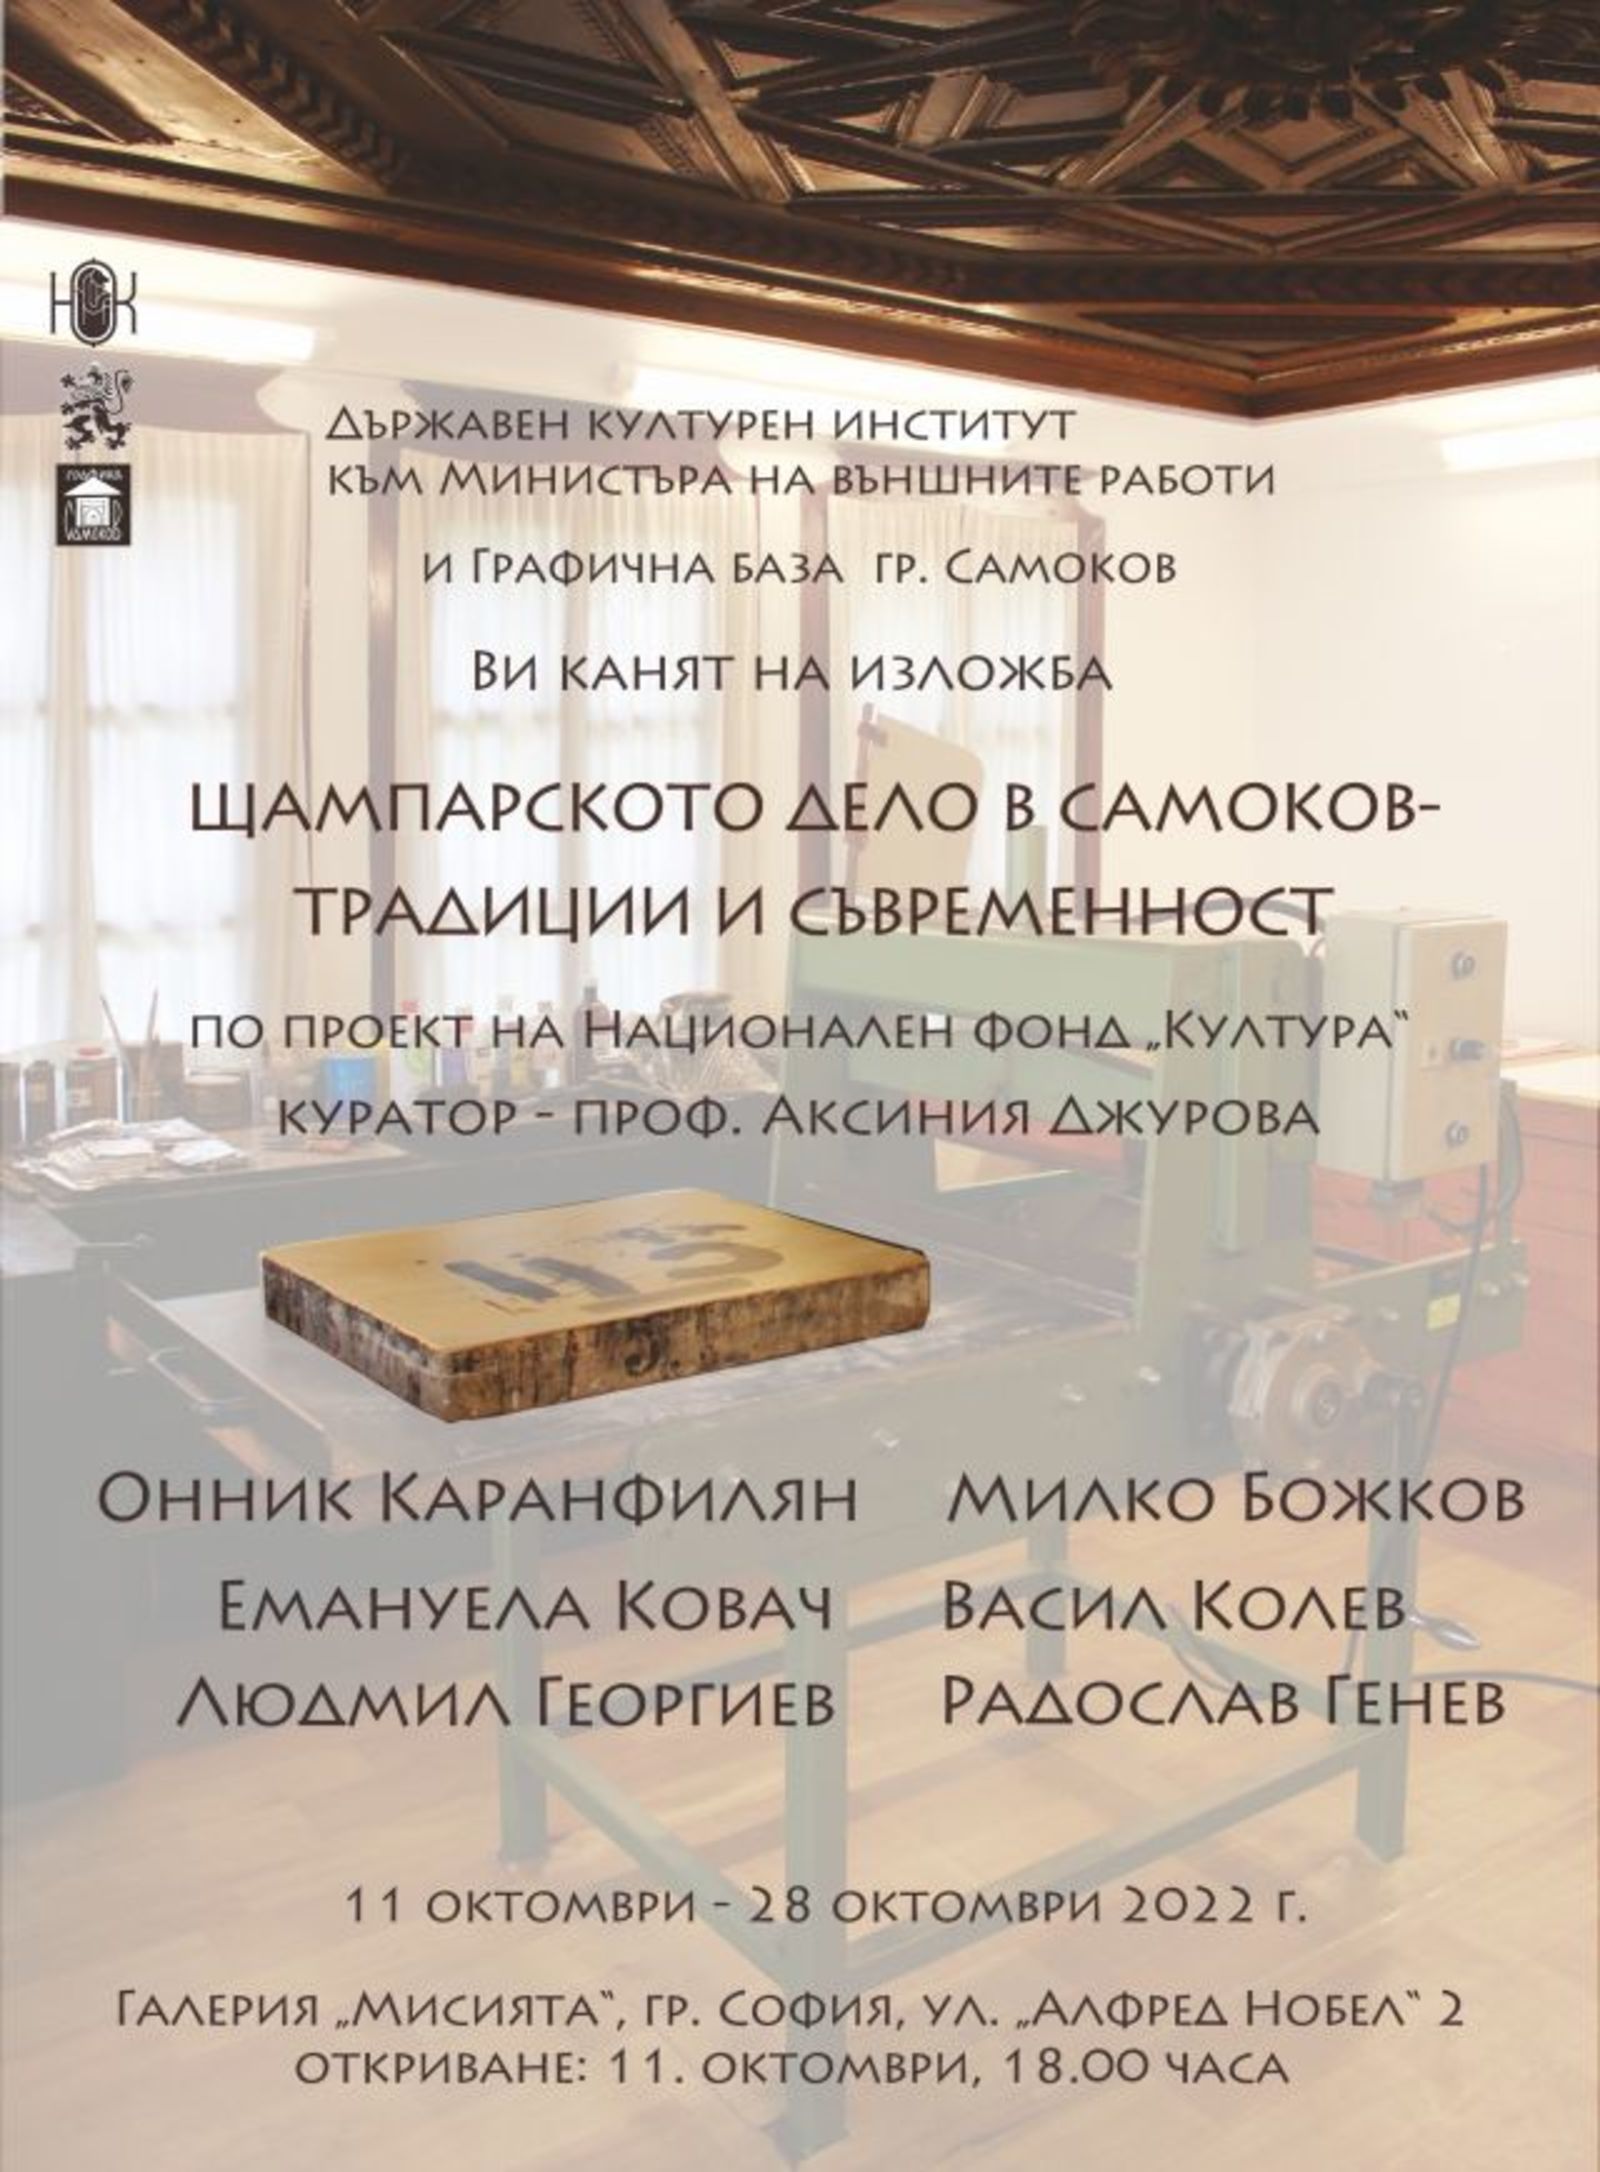 Изложбата „Щампарското дело в Самоков – традиция и съвременност“ се открива в галерия „Мисията“